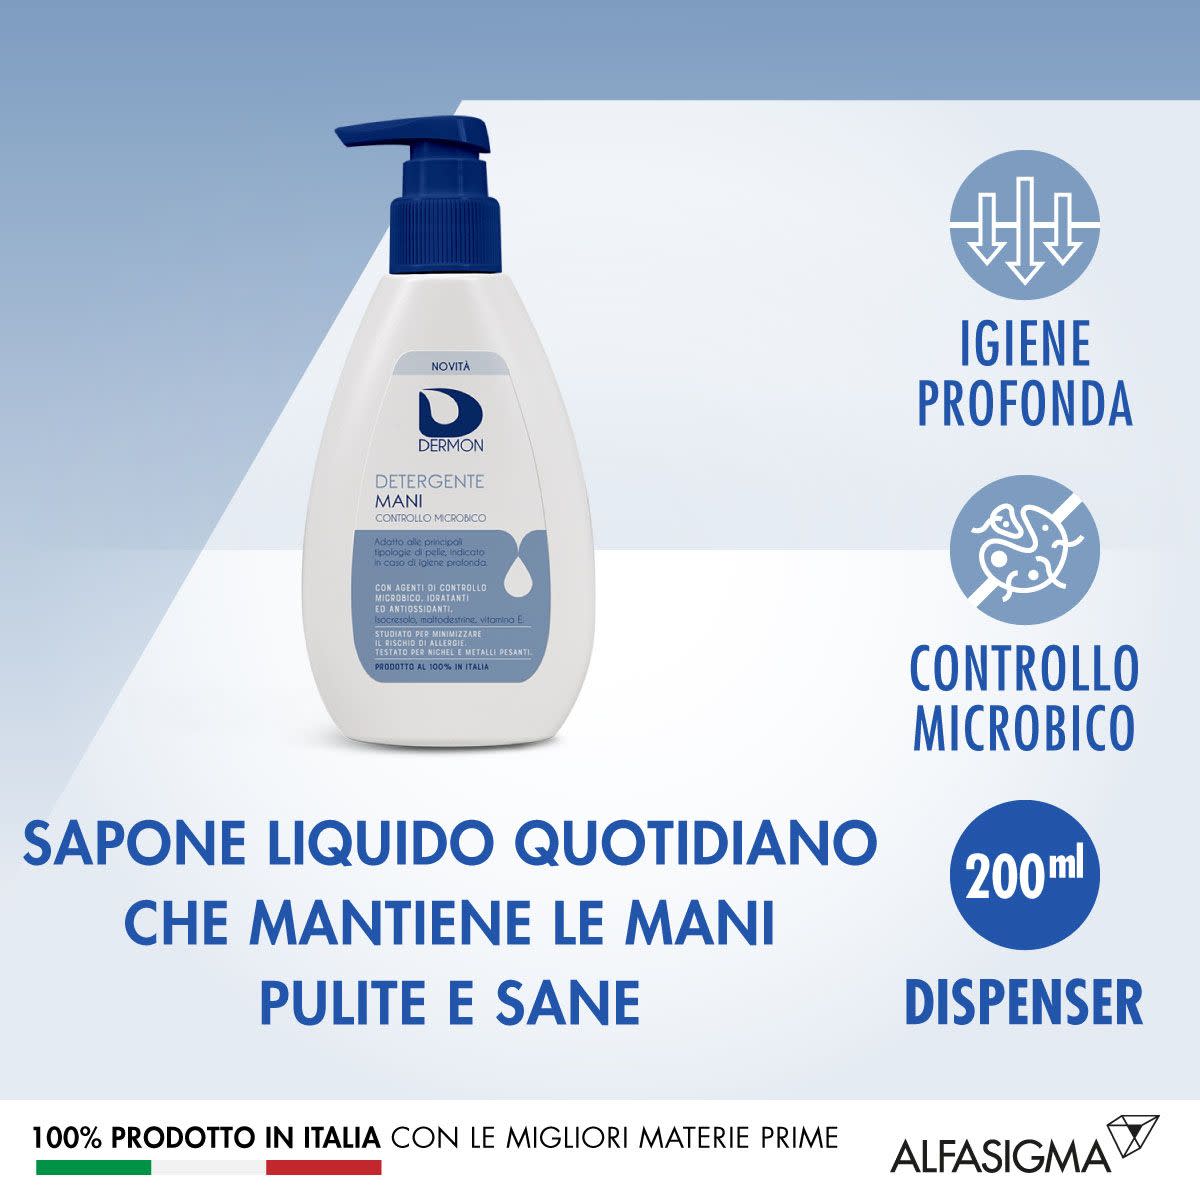 981389366 - Dermon Detergente Mani Controllo Microbico 200ml - 4708755_4.jpg